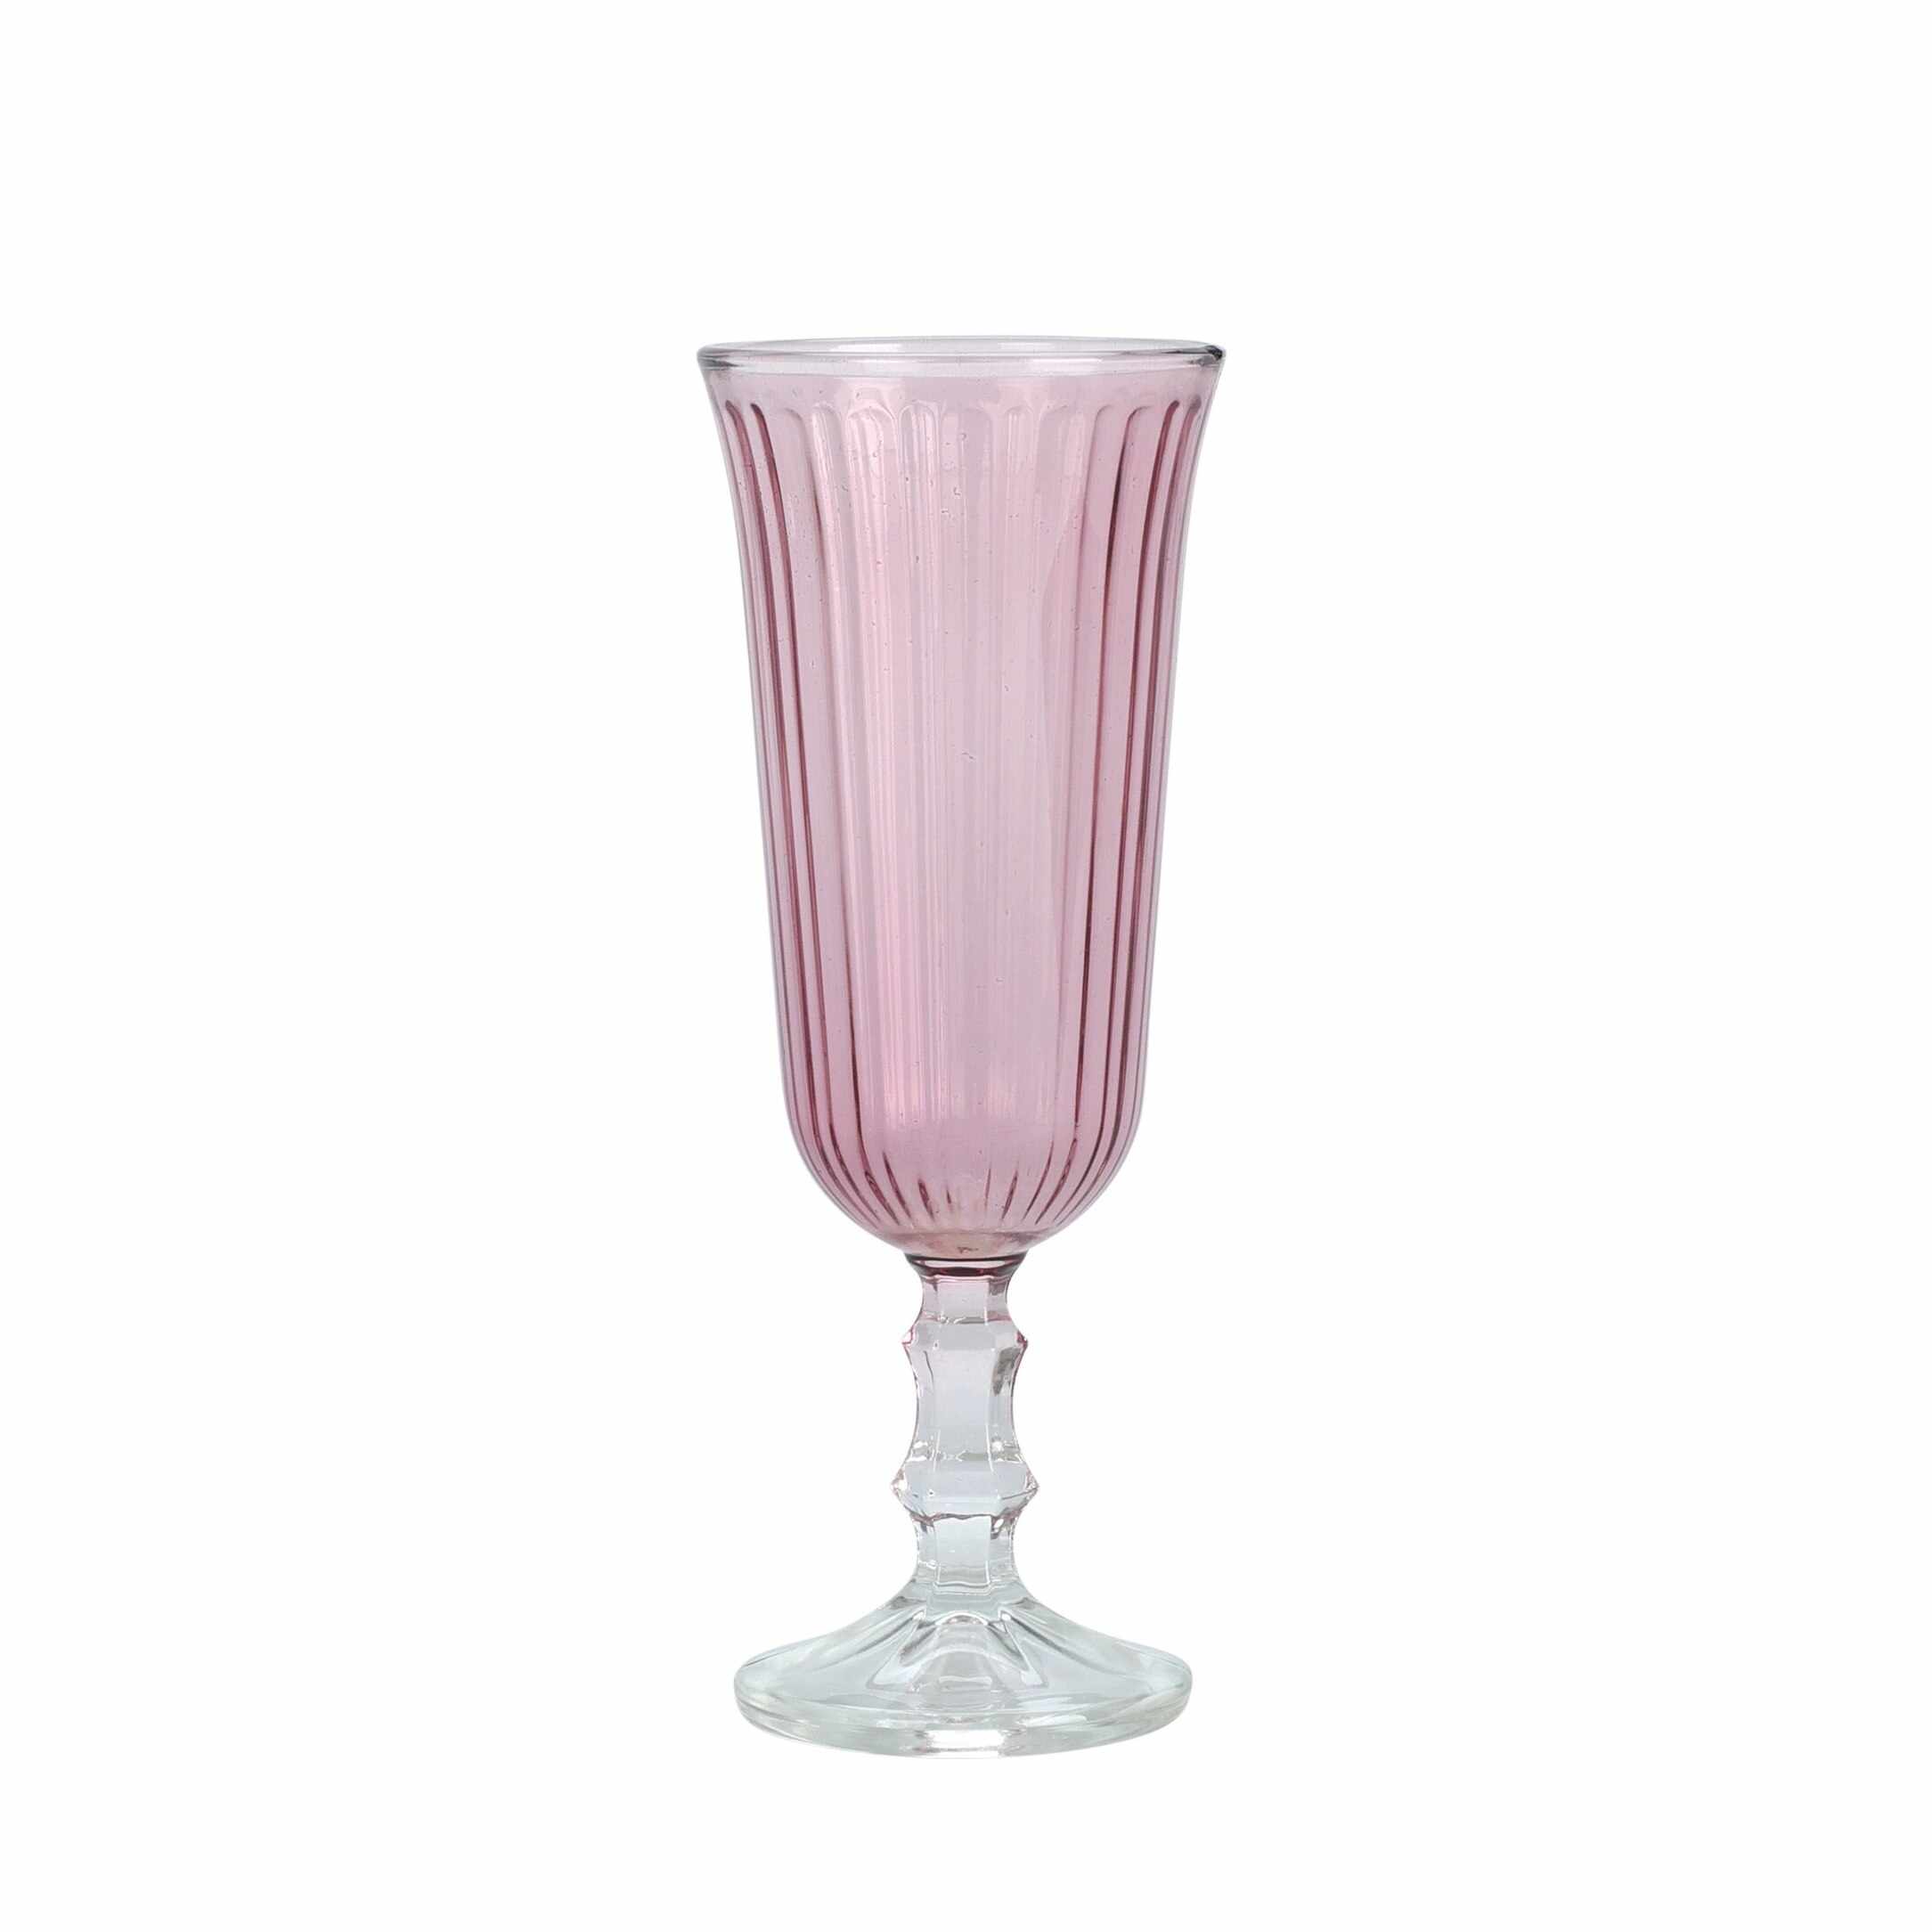 Pahar Blush din sticla roz pentru sampanie 16 cm